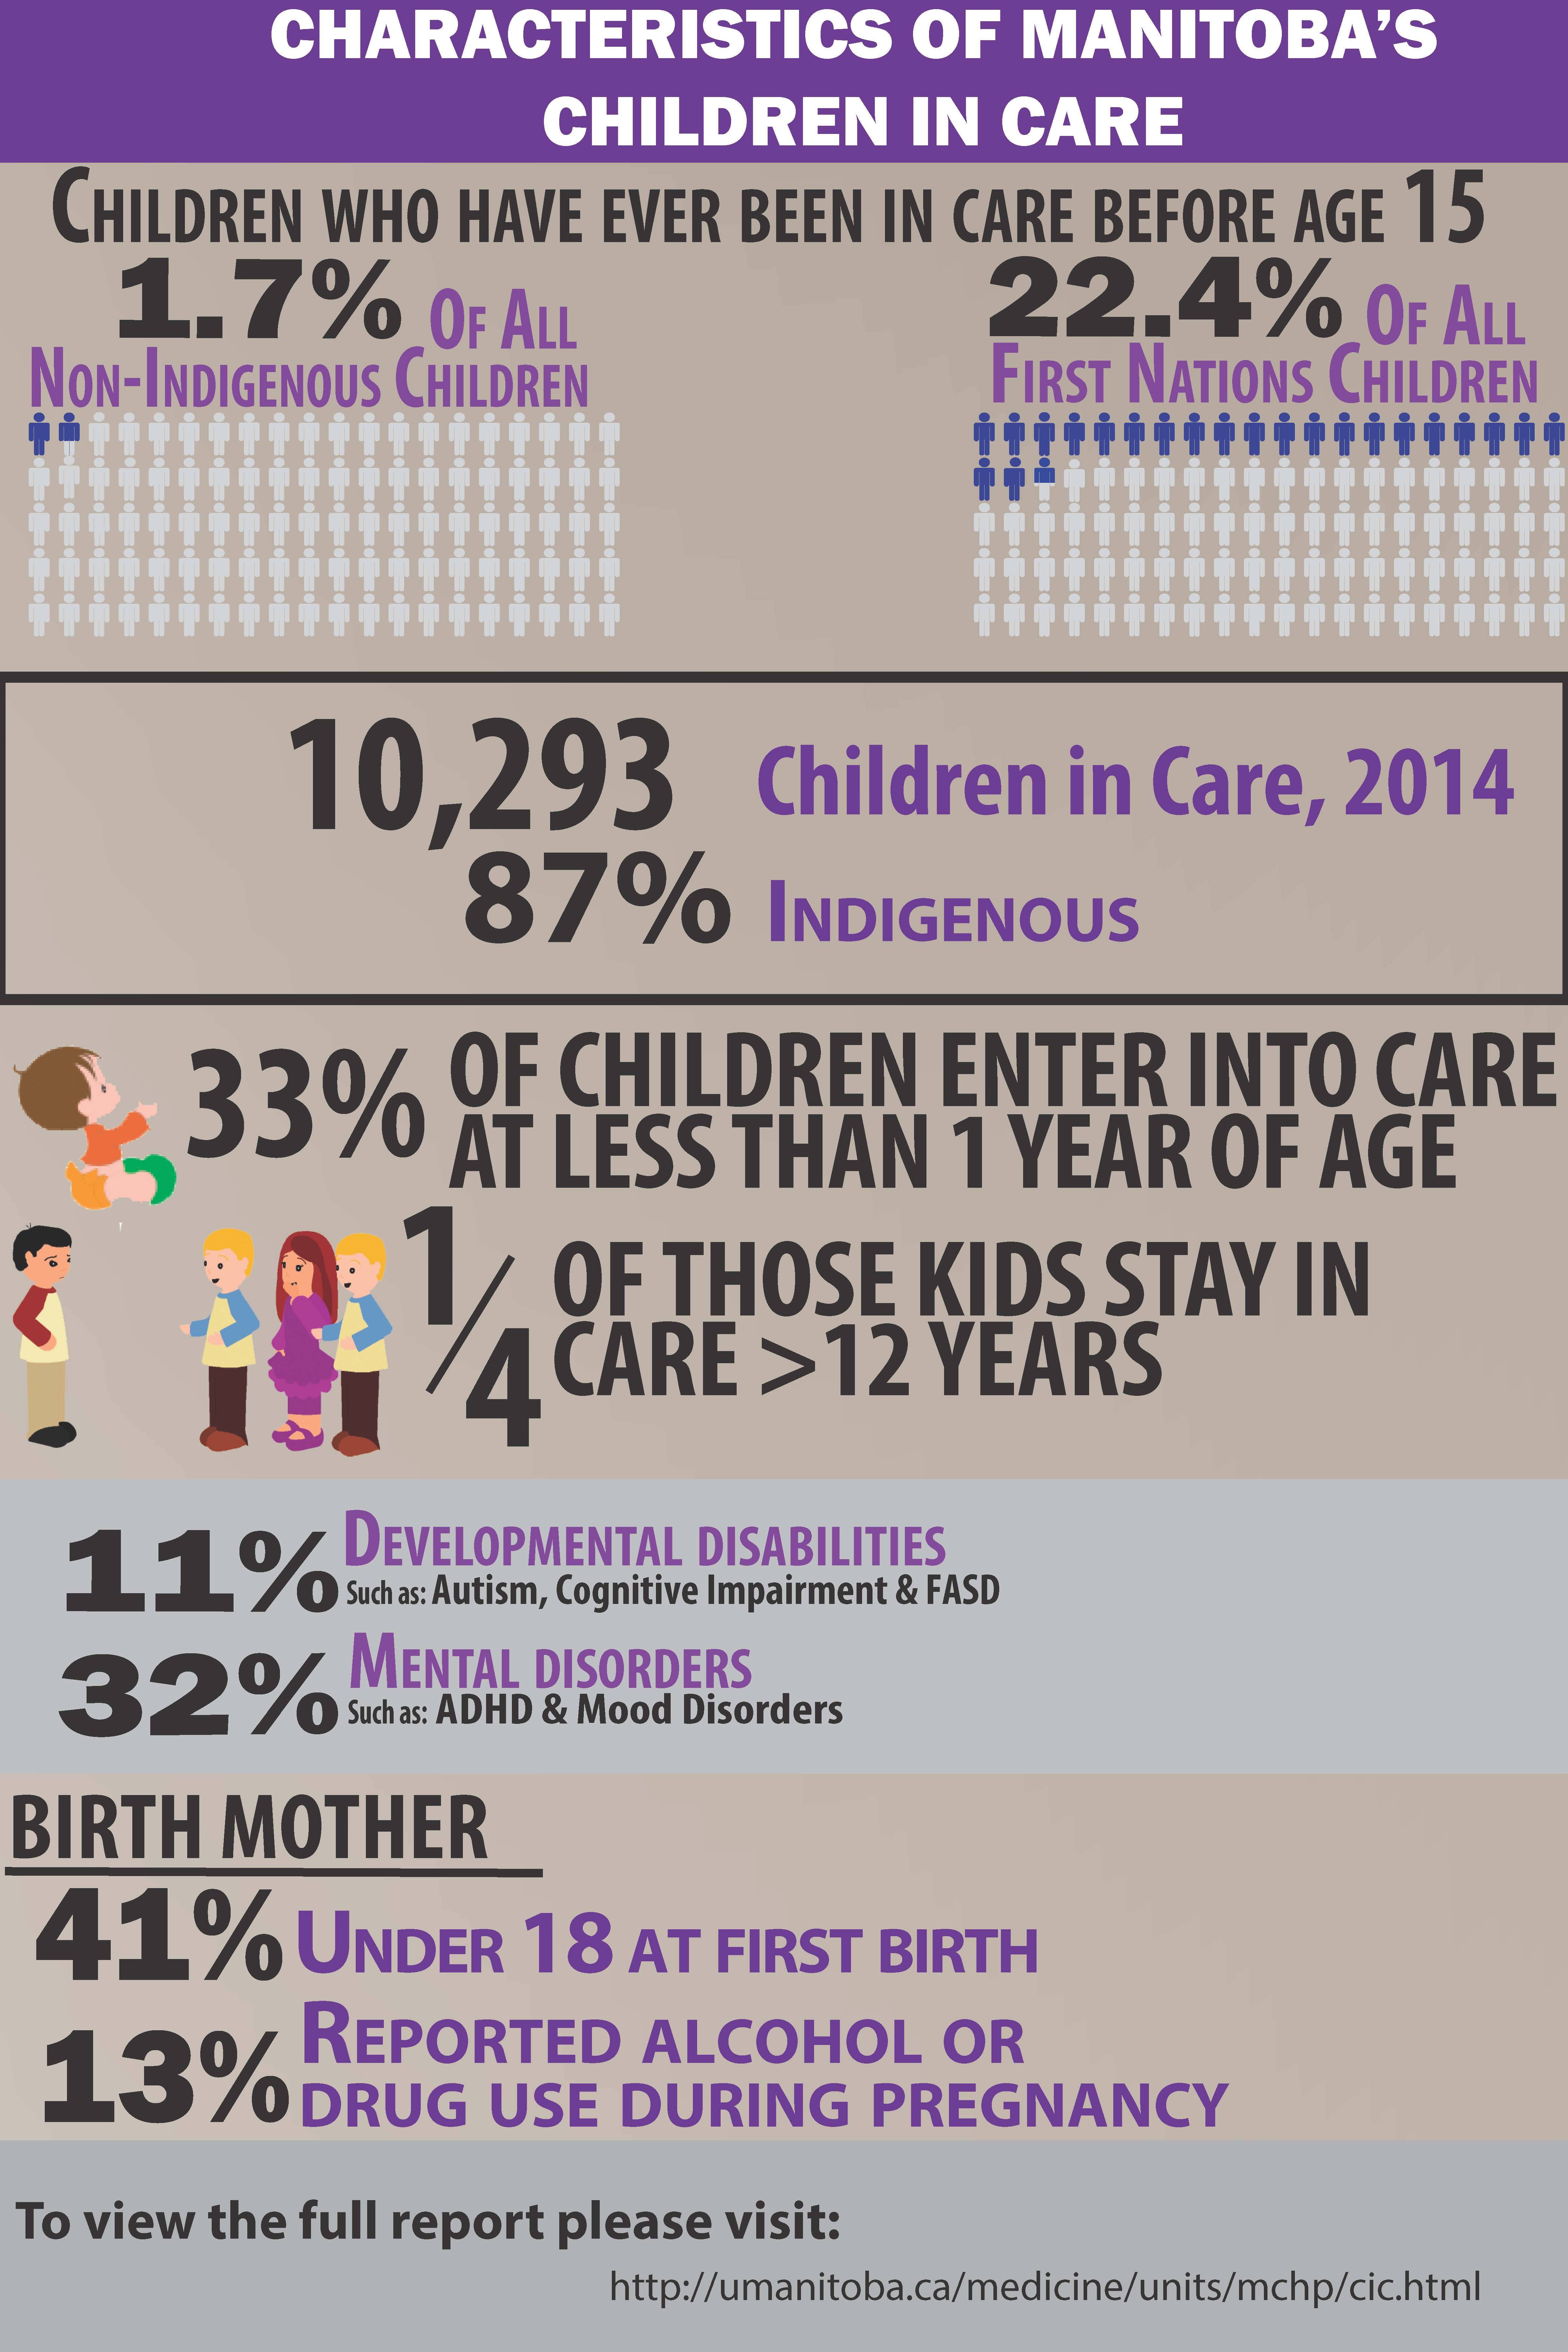 Characteristics of Manitoba's Children in Care